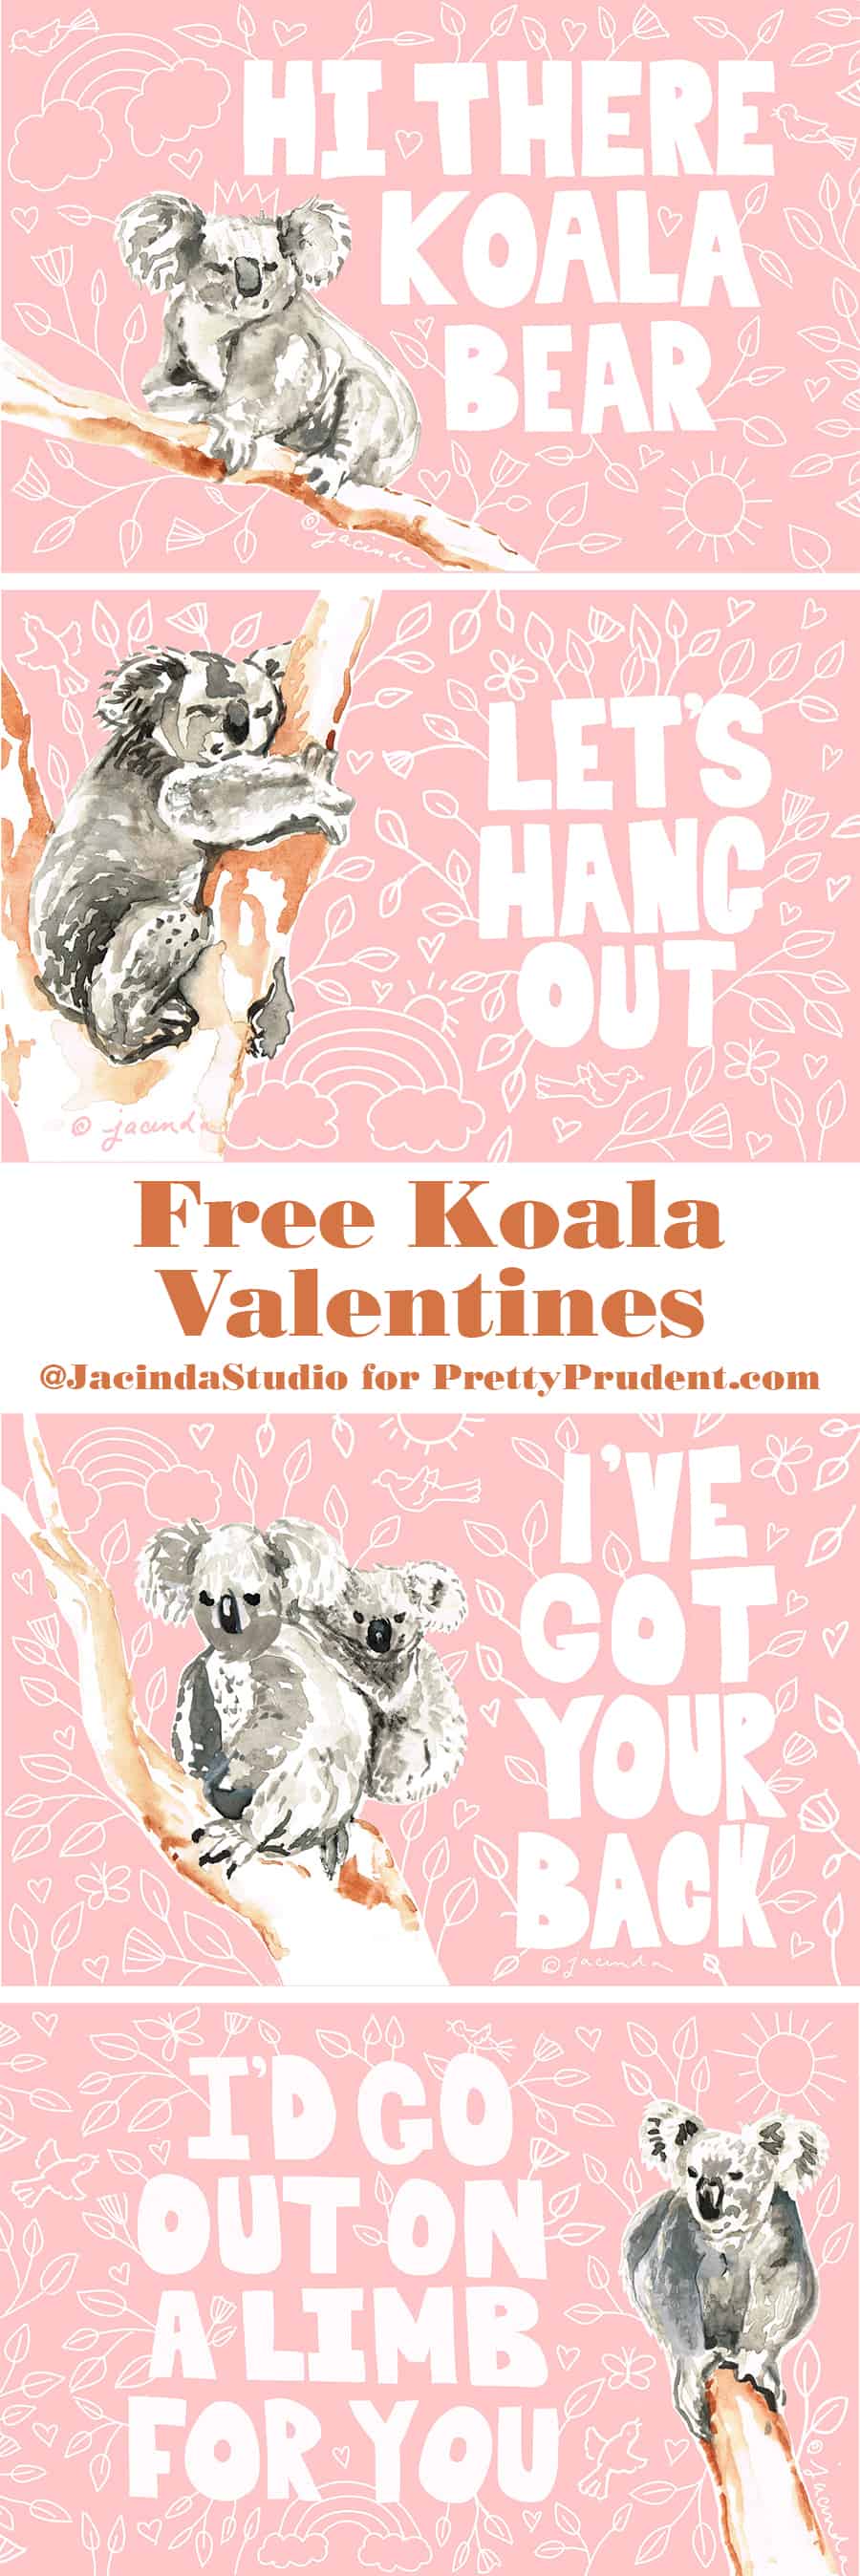 free koala art